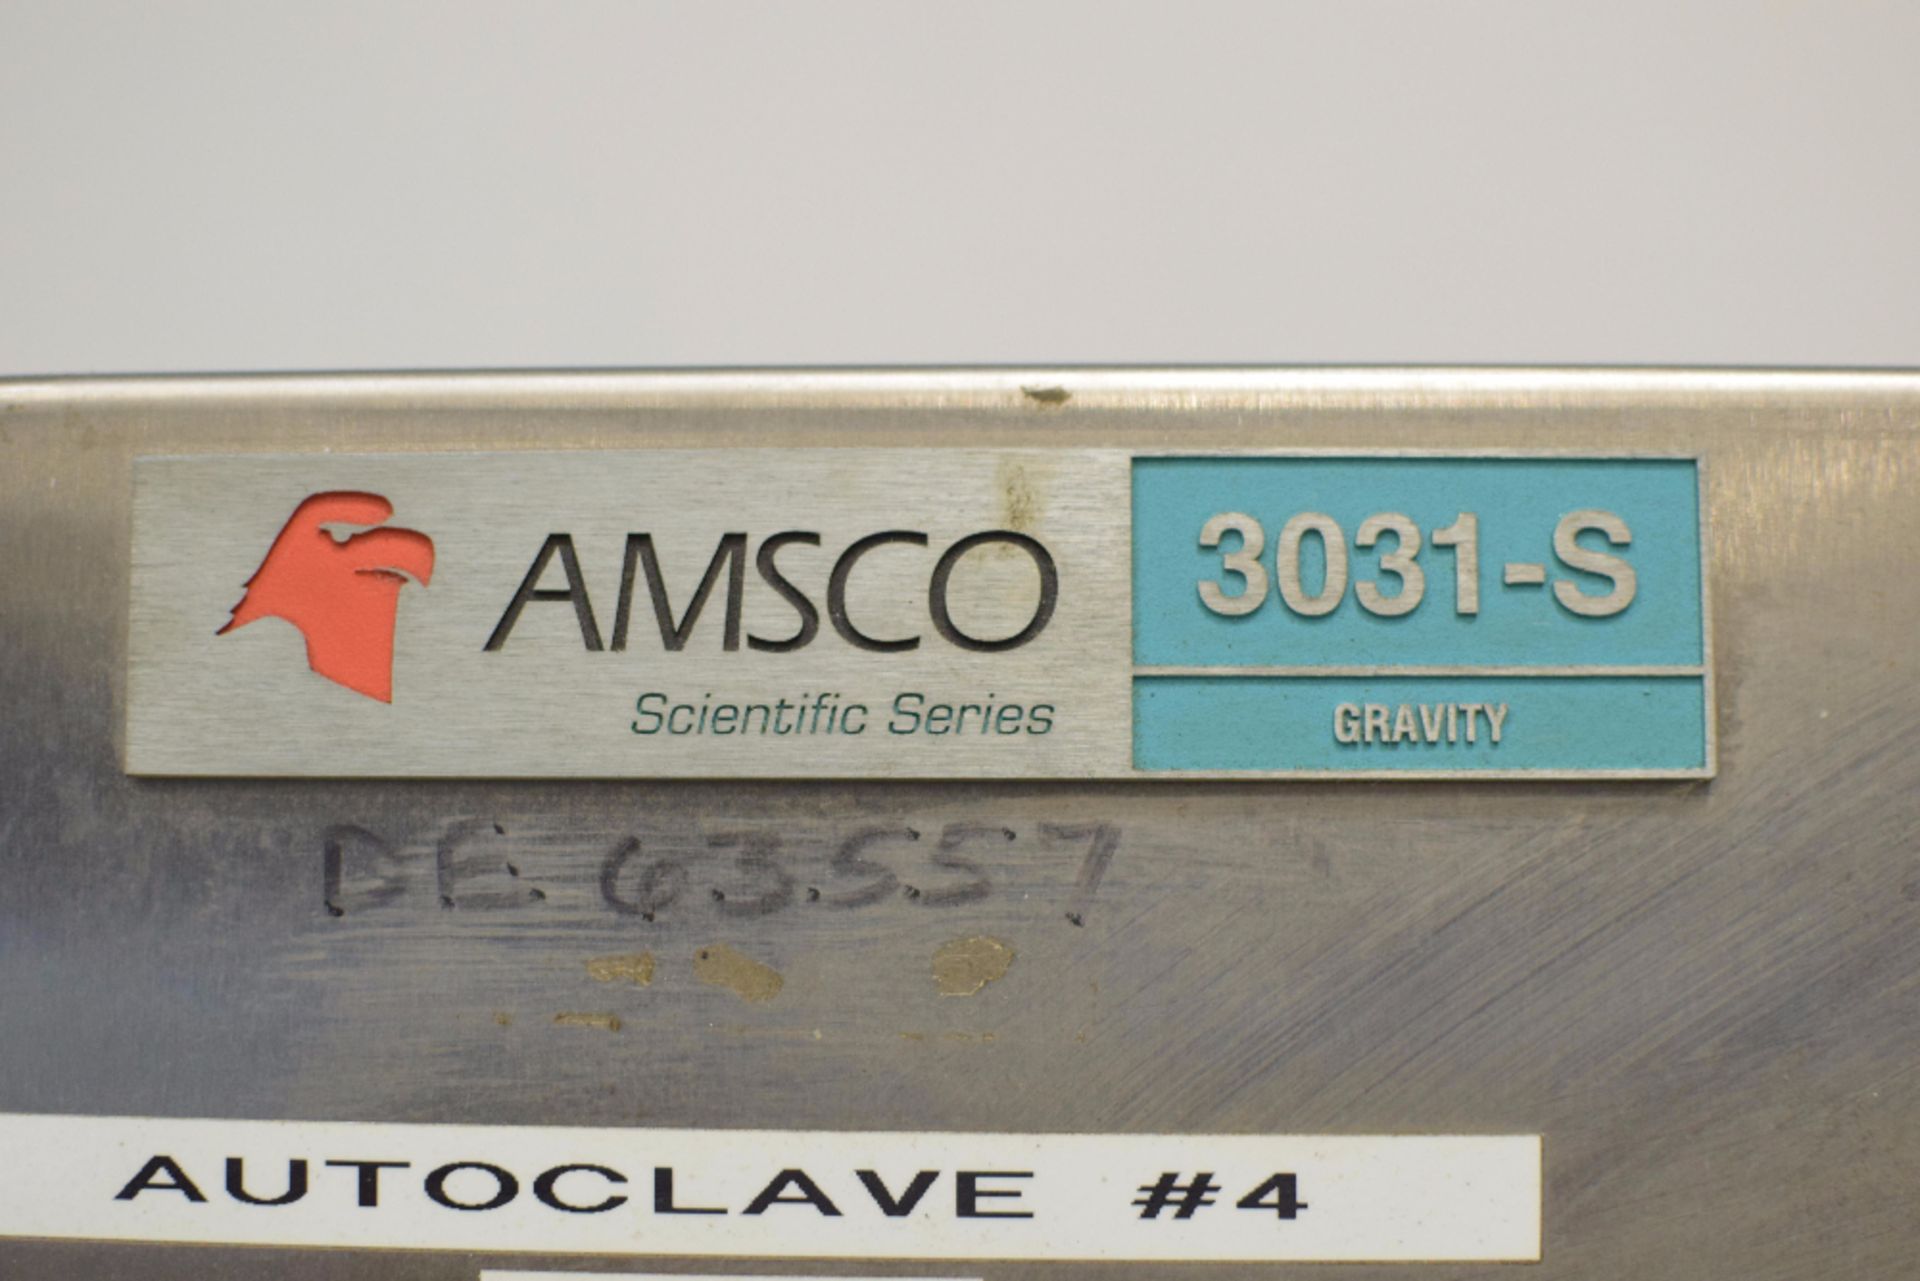 AMSCO Eagle 3031 Gravity Sterilizer - Image 2 of 8